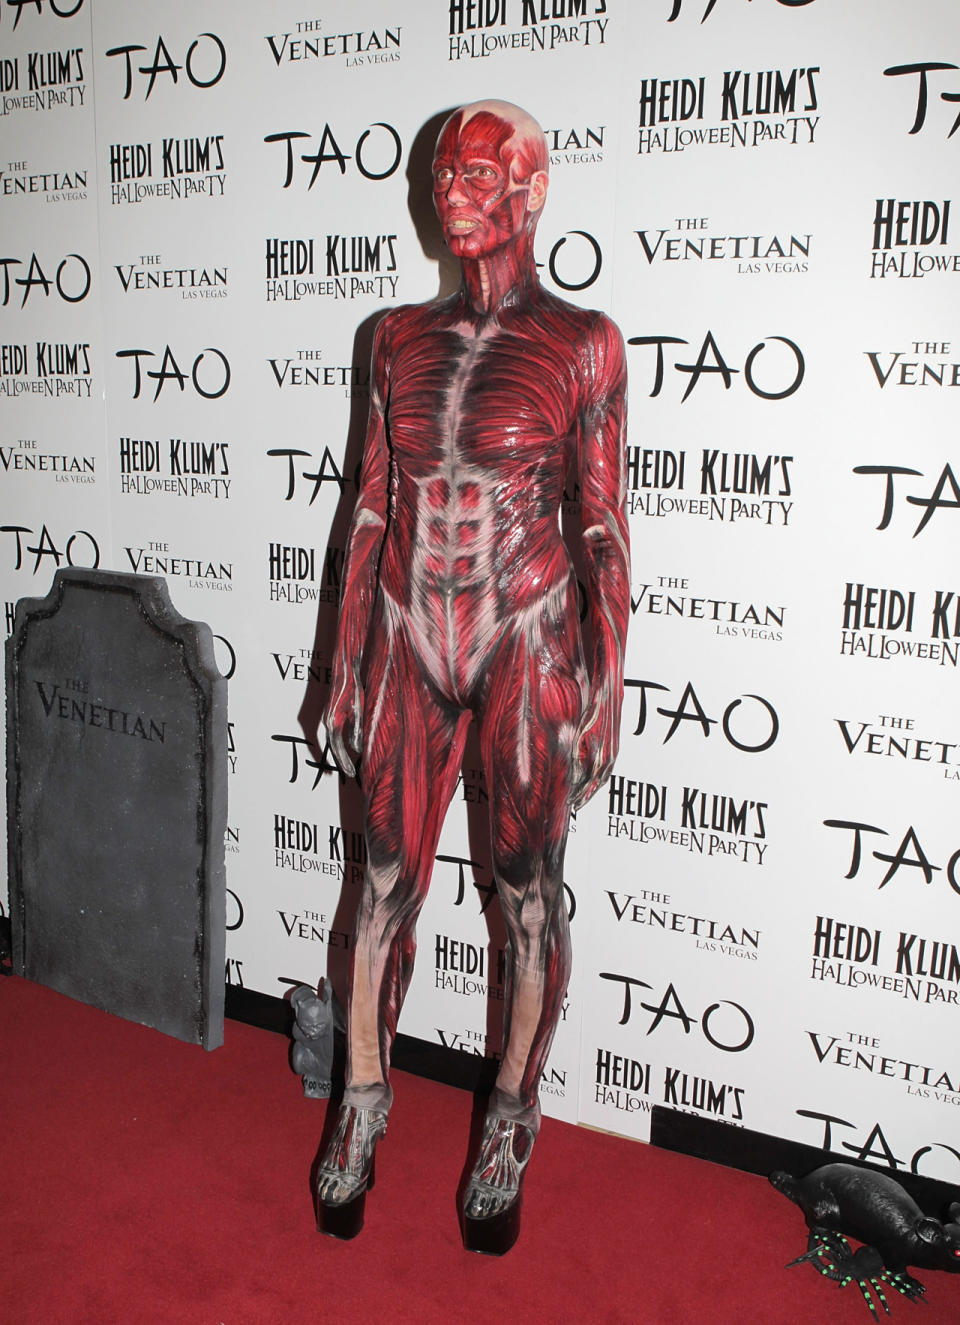 Heidi Klum représente le corps humain.